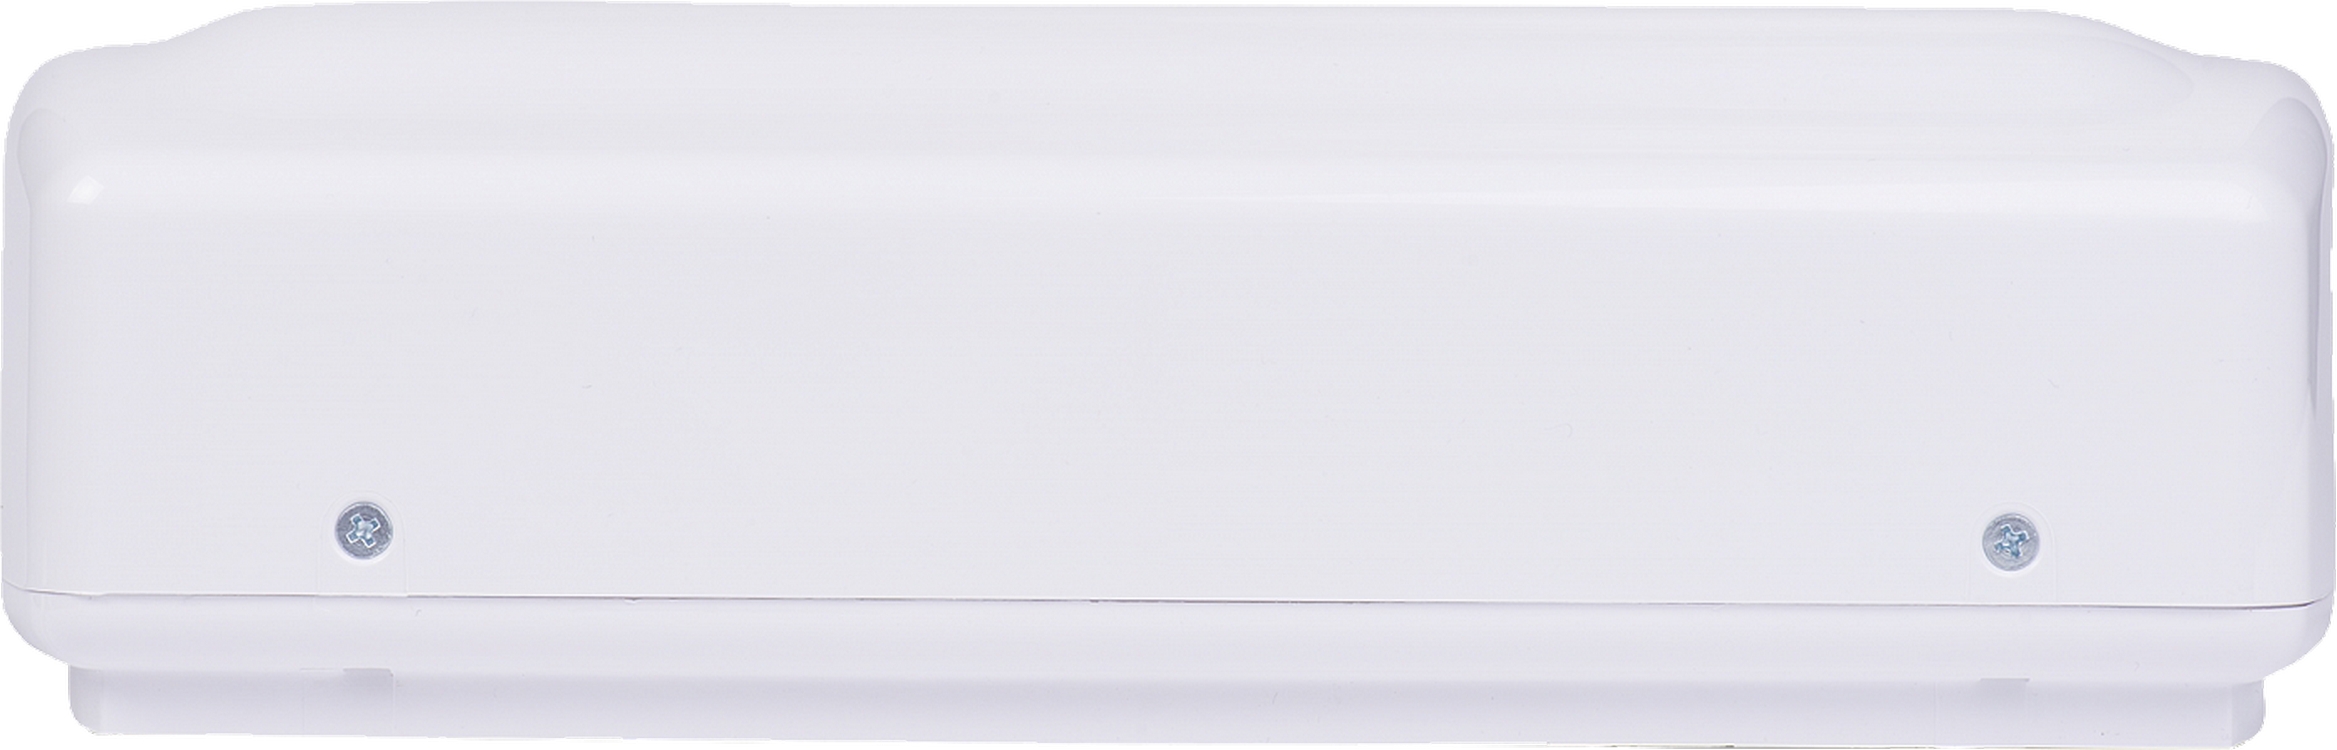 Проточный водонагреватель Atmor Basic 5 KW Shower инструкция - изображение 6